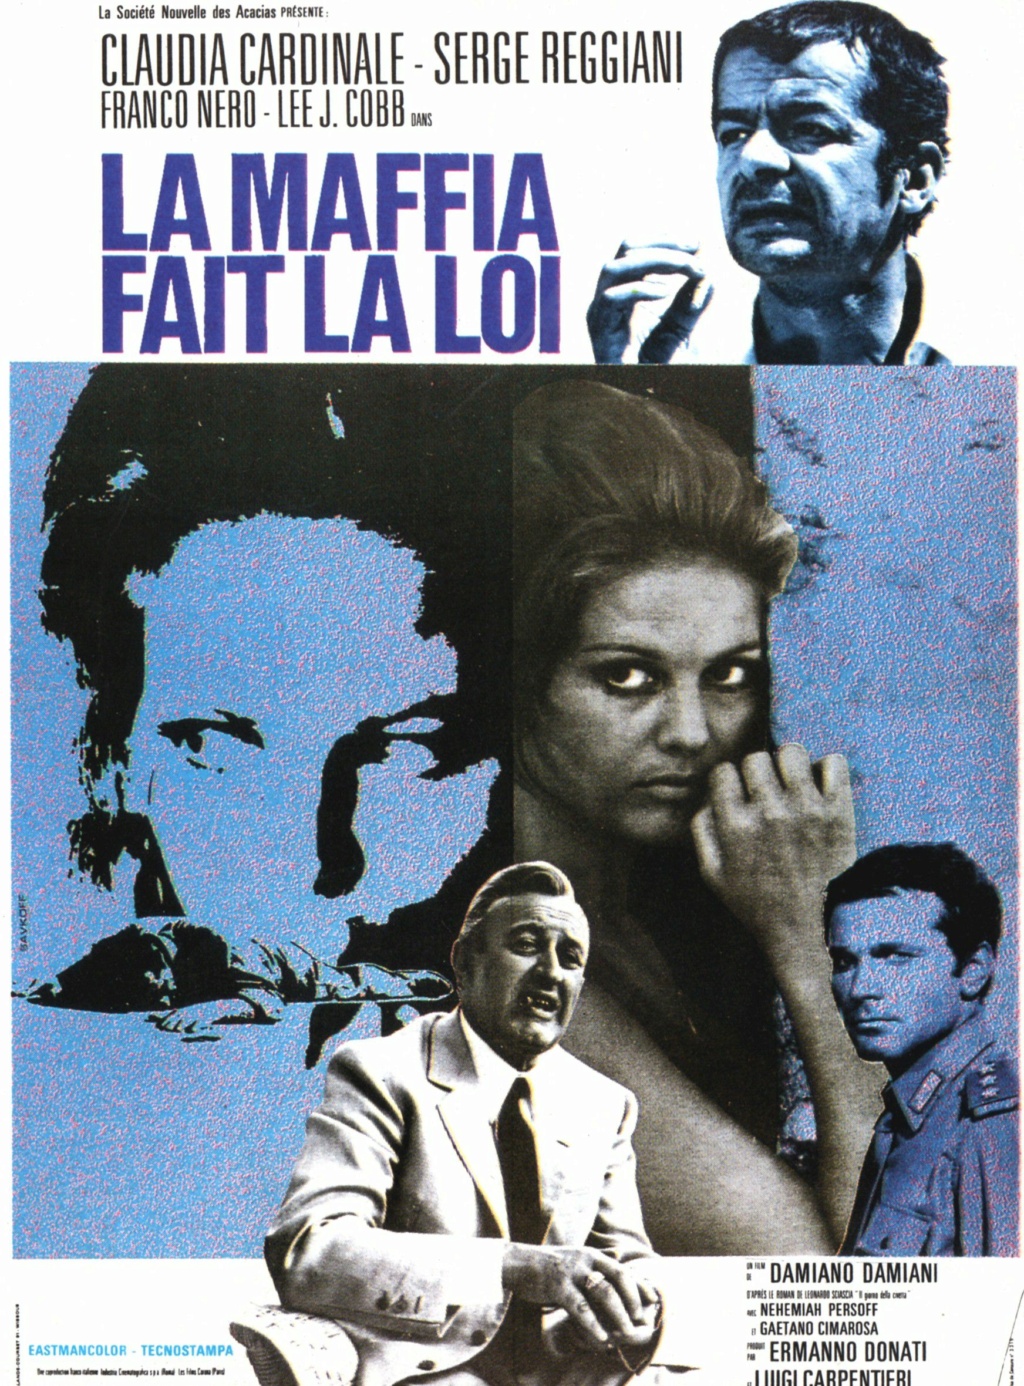 La Maffia (Mafia) fait la loi - Il giorno della civetta - Damiano Damiani - 1968 La_maf10